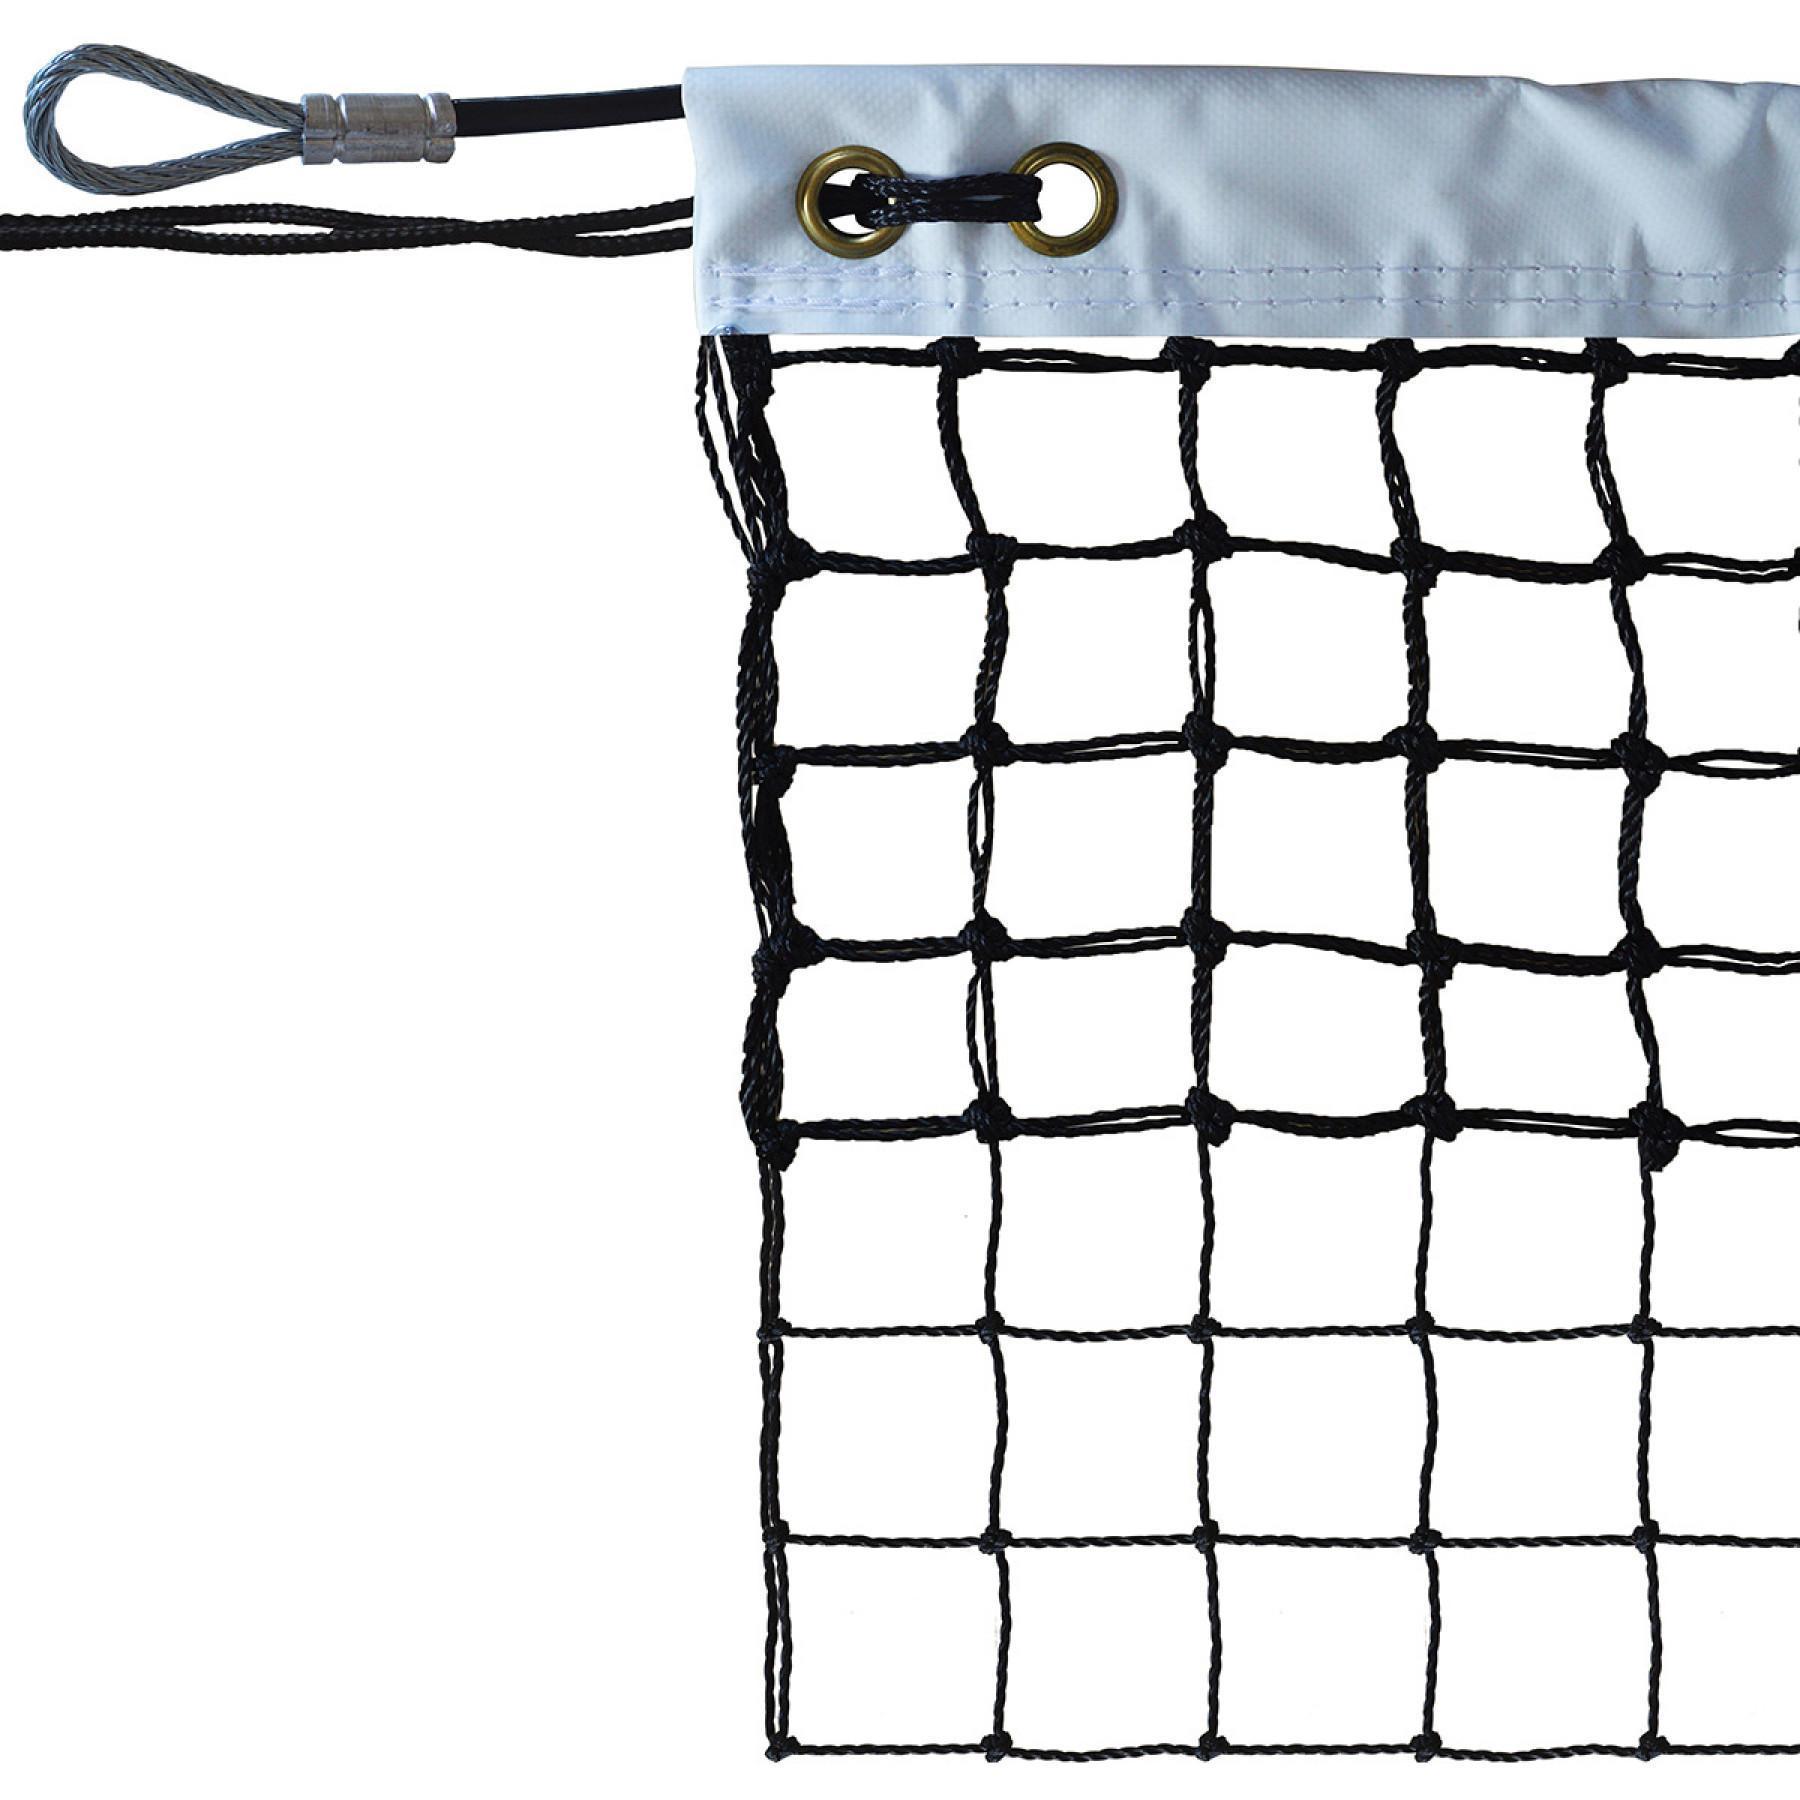 Rete da tennis cablata 2mm mesh 45 raddoppiata su 6 file Sporti France